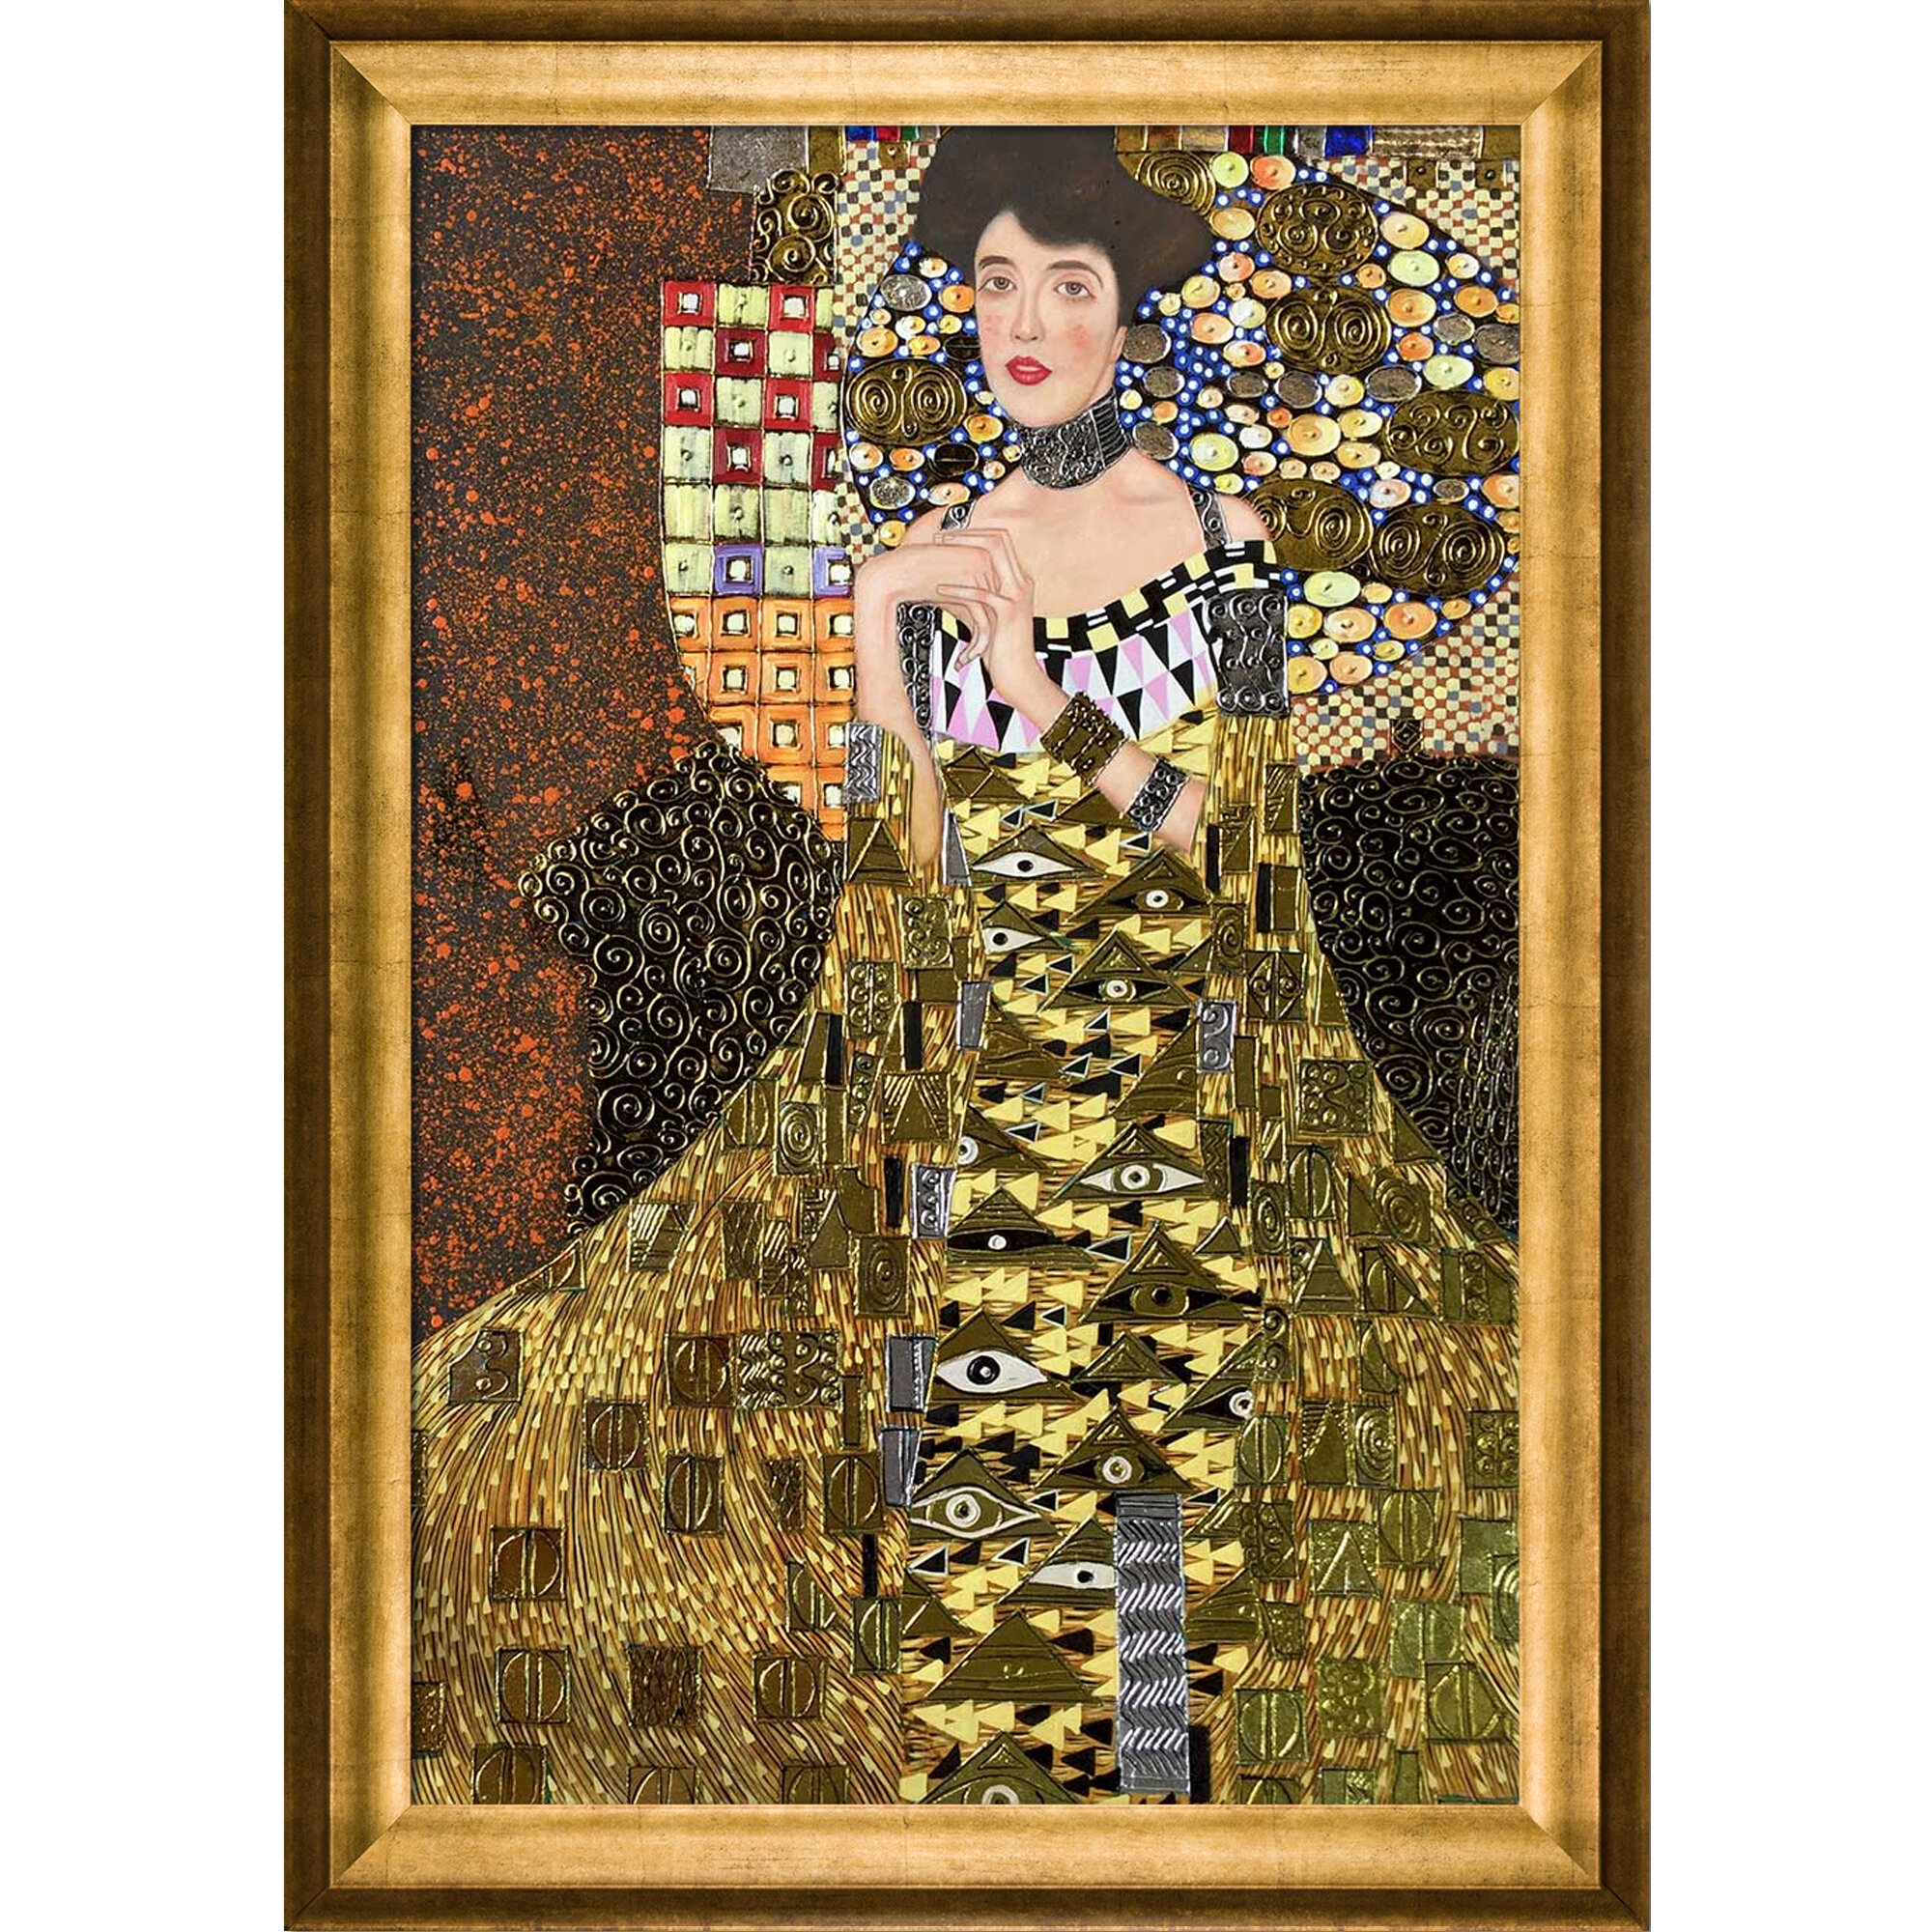 WALL JACQUARD WOVEN TAPESTRY Portrait of Adele GUSTAV KLIMT ART EUROPEAN DECOR